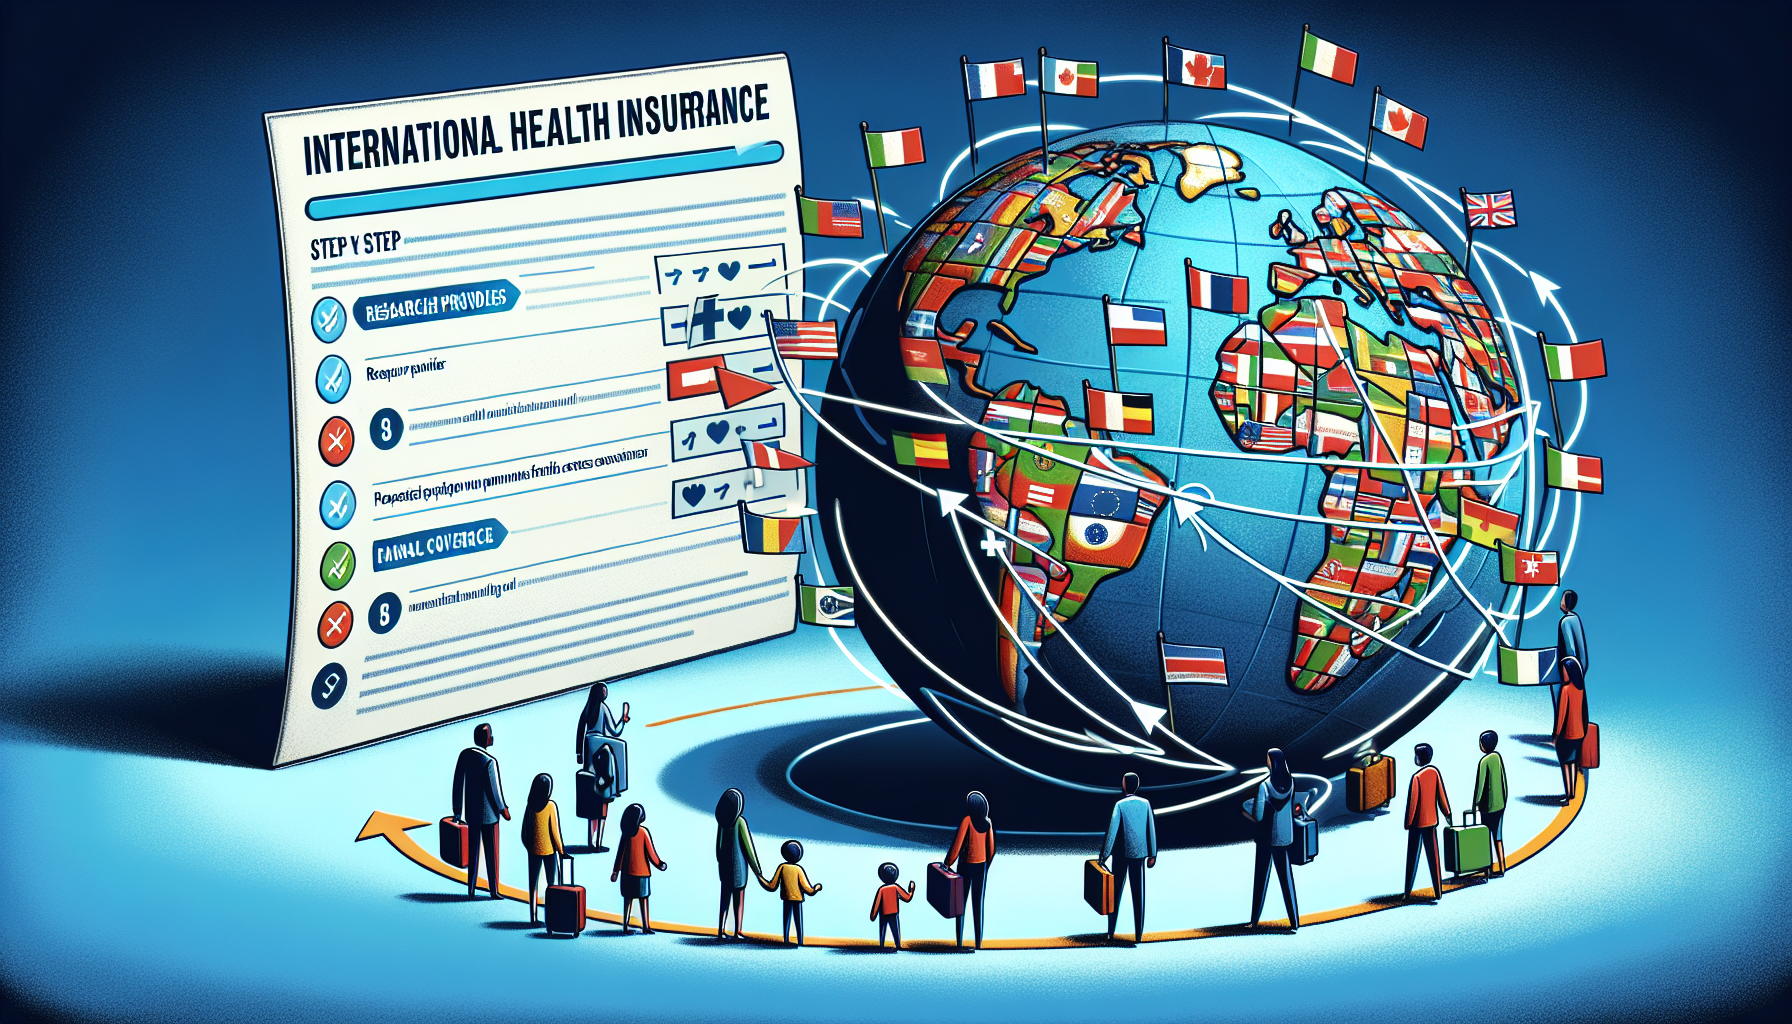 découvrez les étapes incontournables pour souscrire à une assurance santé internationale et explorez les avantages de cette protection essentielle pour voyager ou vivre à l'étranger.